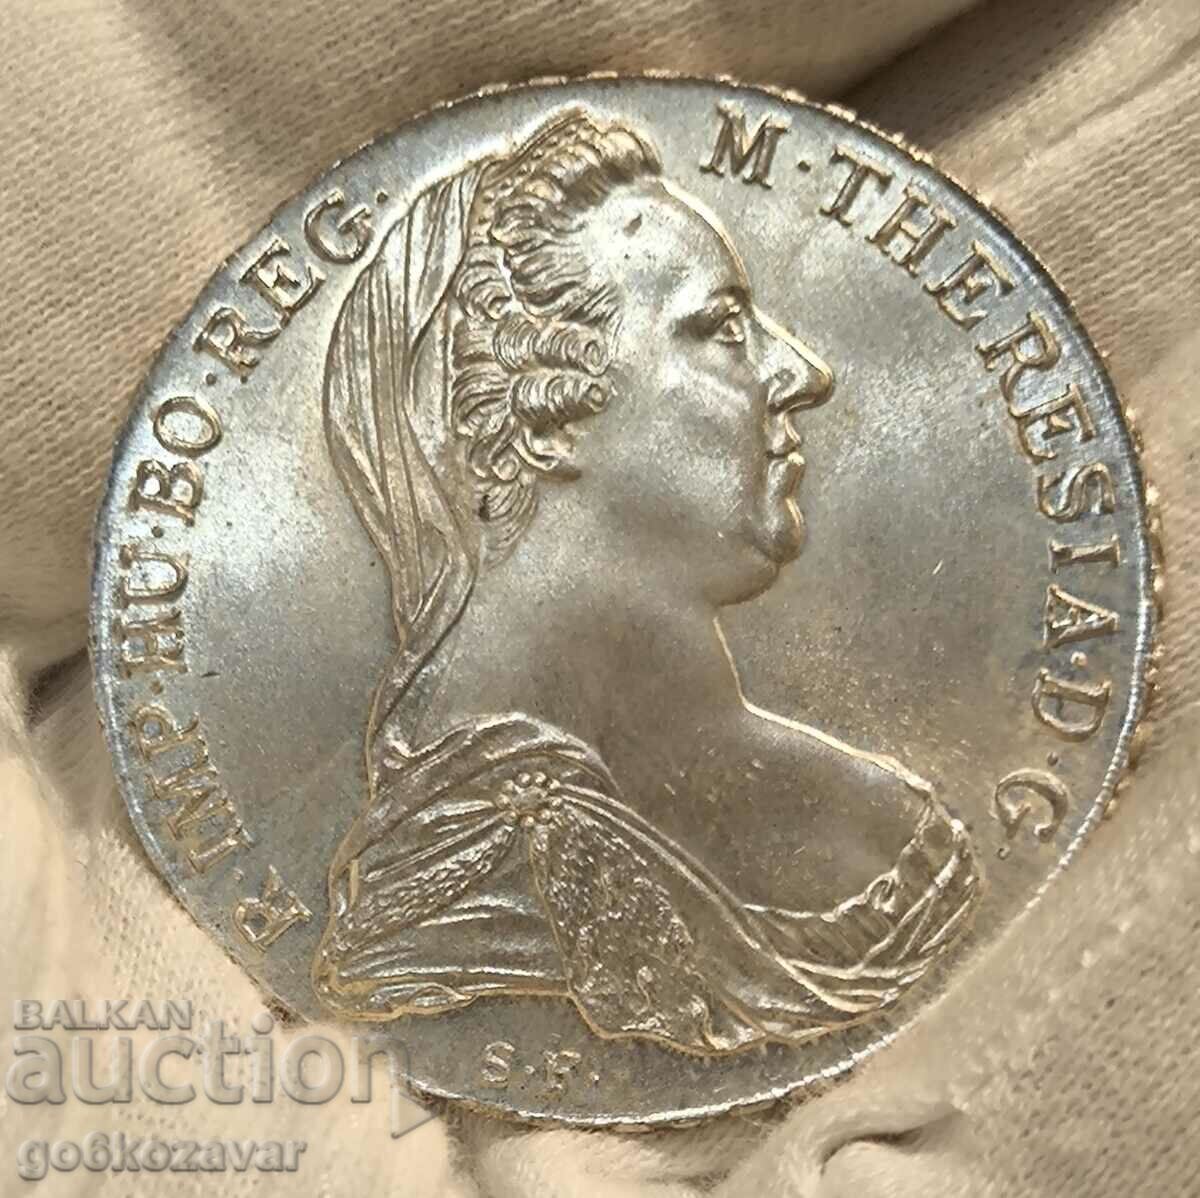 Thaler Austria M. Theresia 1780 Silver UNC!